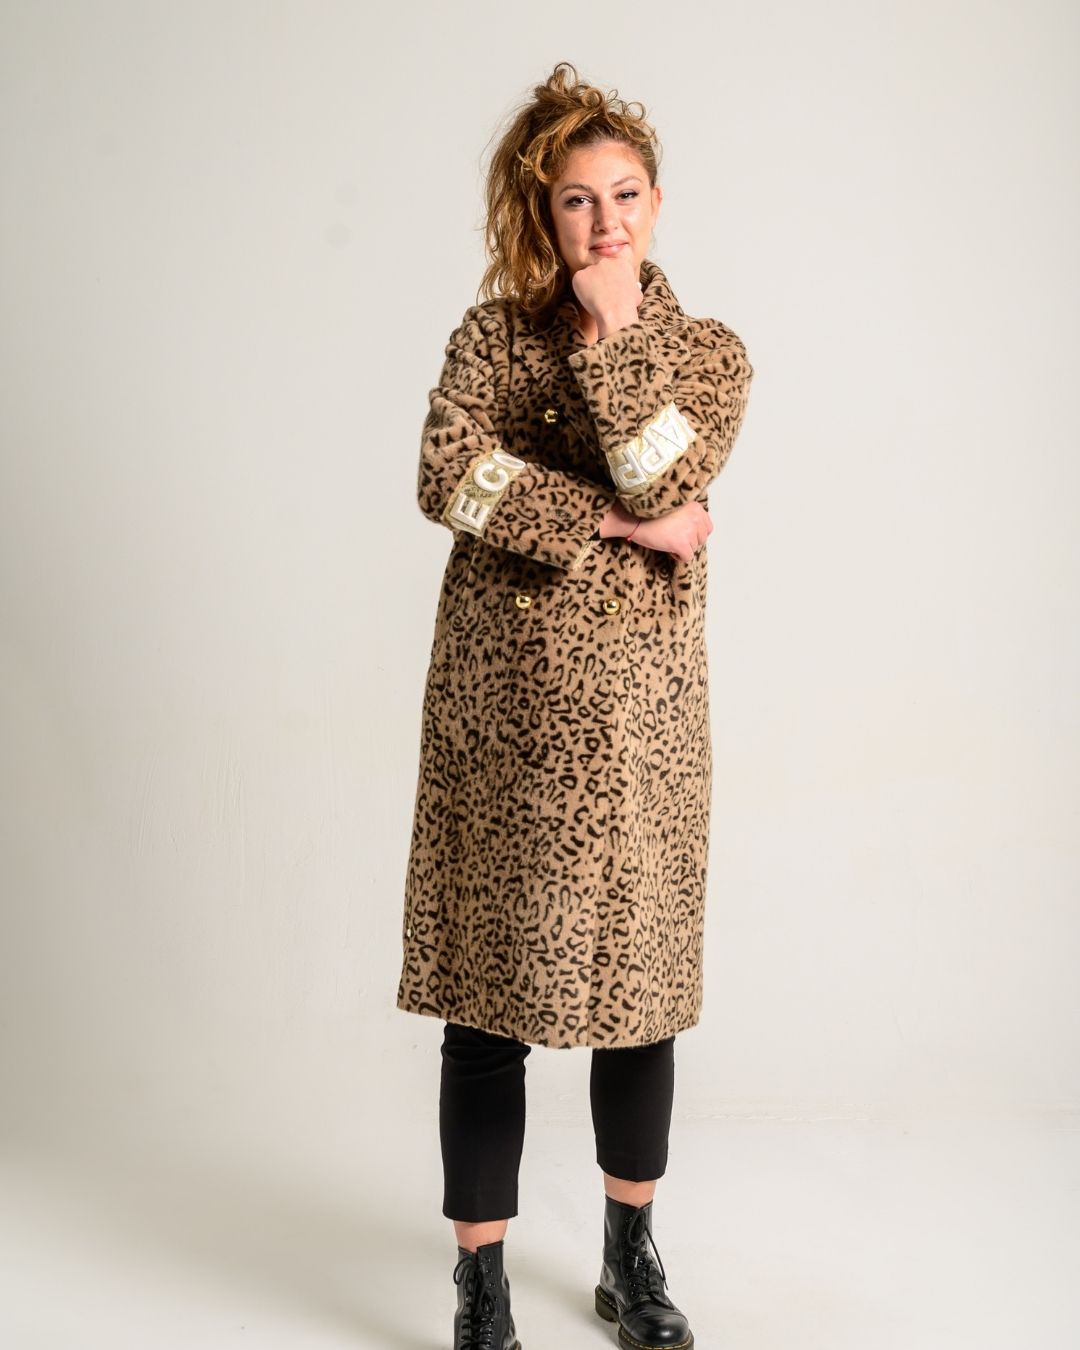 Cappotto in pelliccia sintetica, stampa leopardo. - Marpel l'Atelier